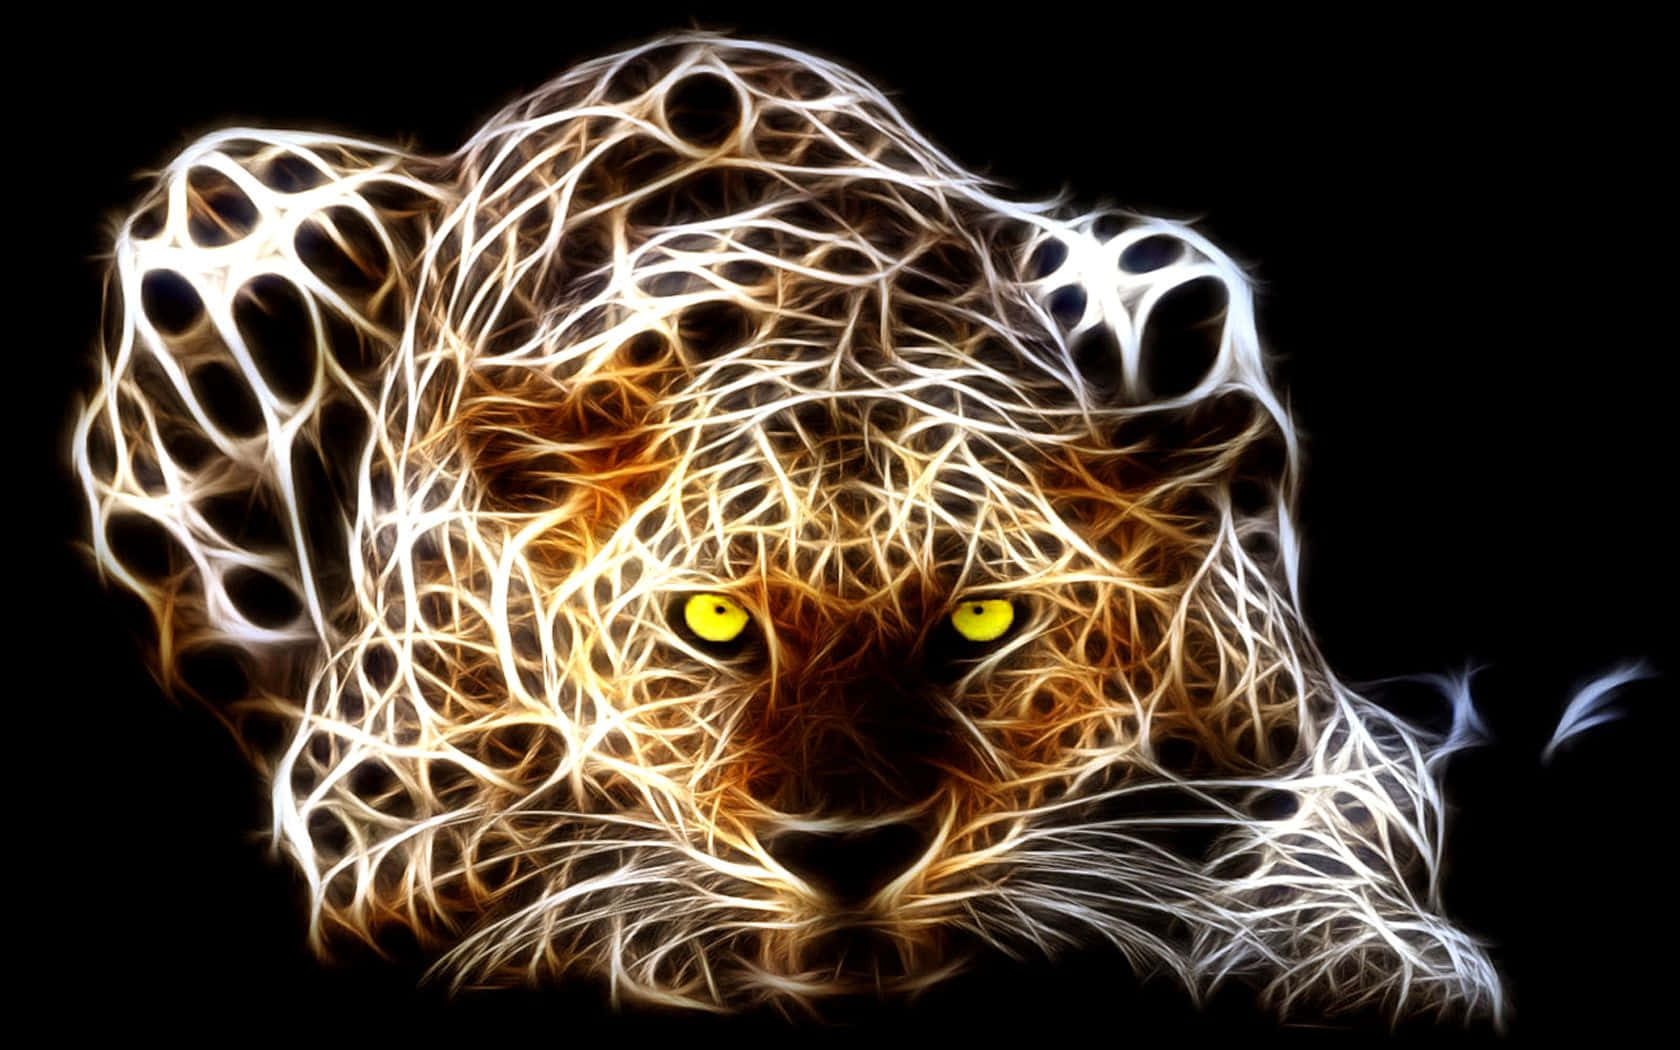 Etnærbillede Af En Gepard